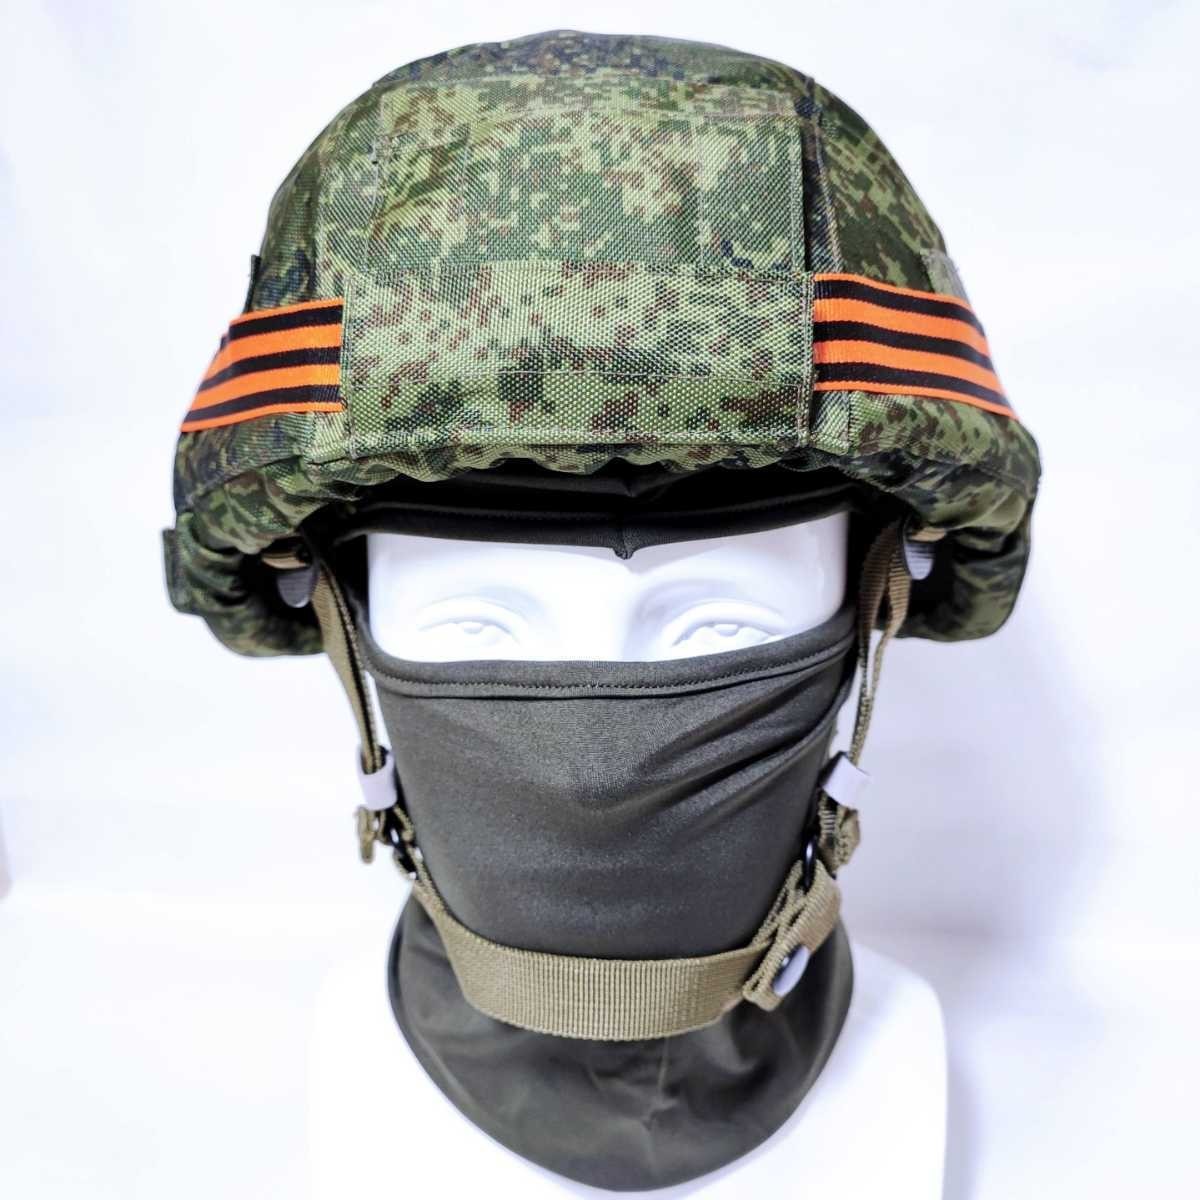 【Yes.Sir shop】 Россия  ...  оборудование  6b47  шлем  6b51  подкладка   комплект    новый товар  неиспользуемый 